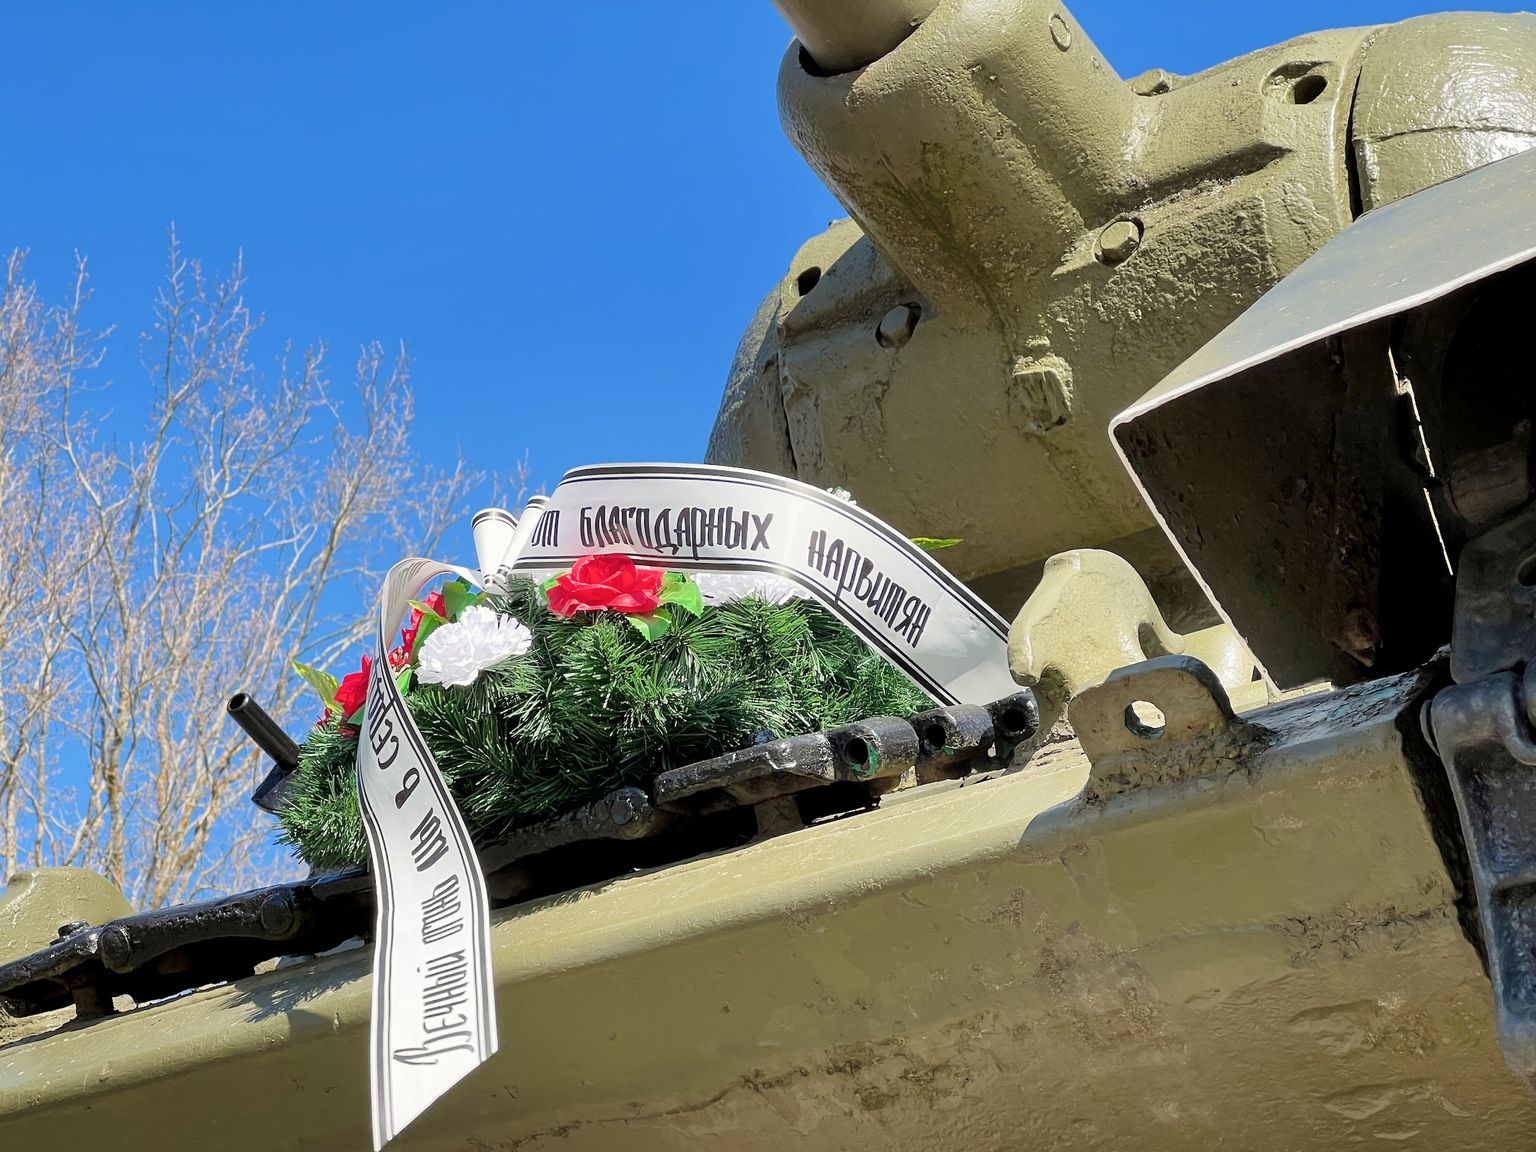 "От благодарных нарвитян" - надпись на венке на броне танка Т-34, стоящем в виде памятника на берегу пограничной реки Нарва.